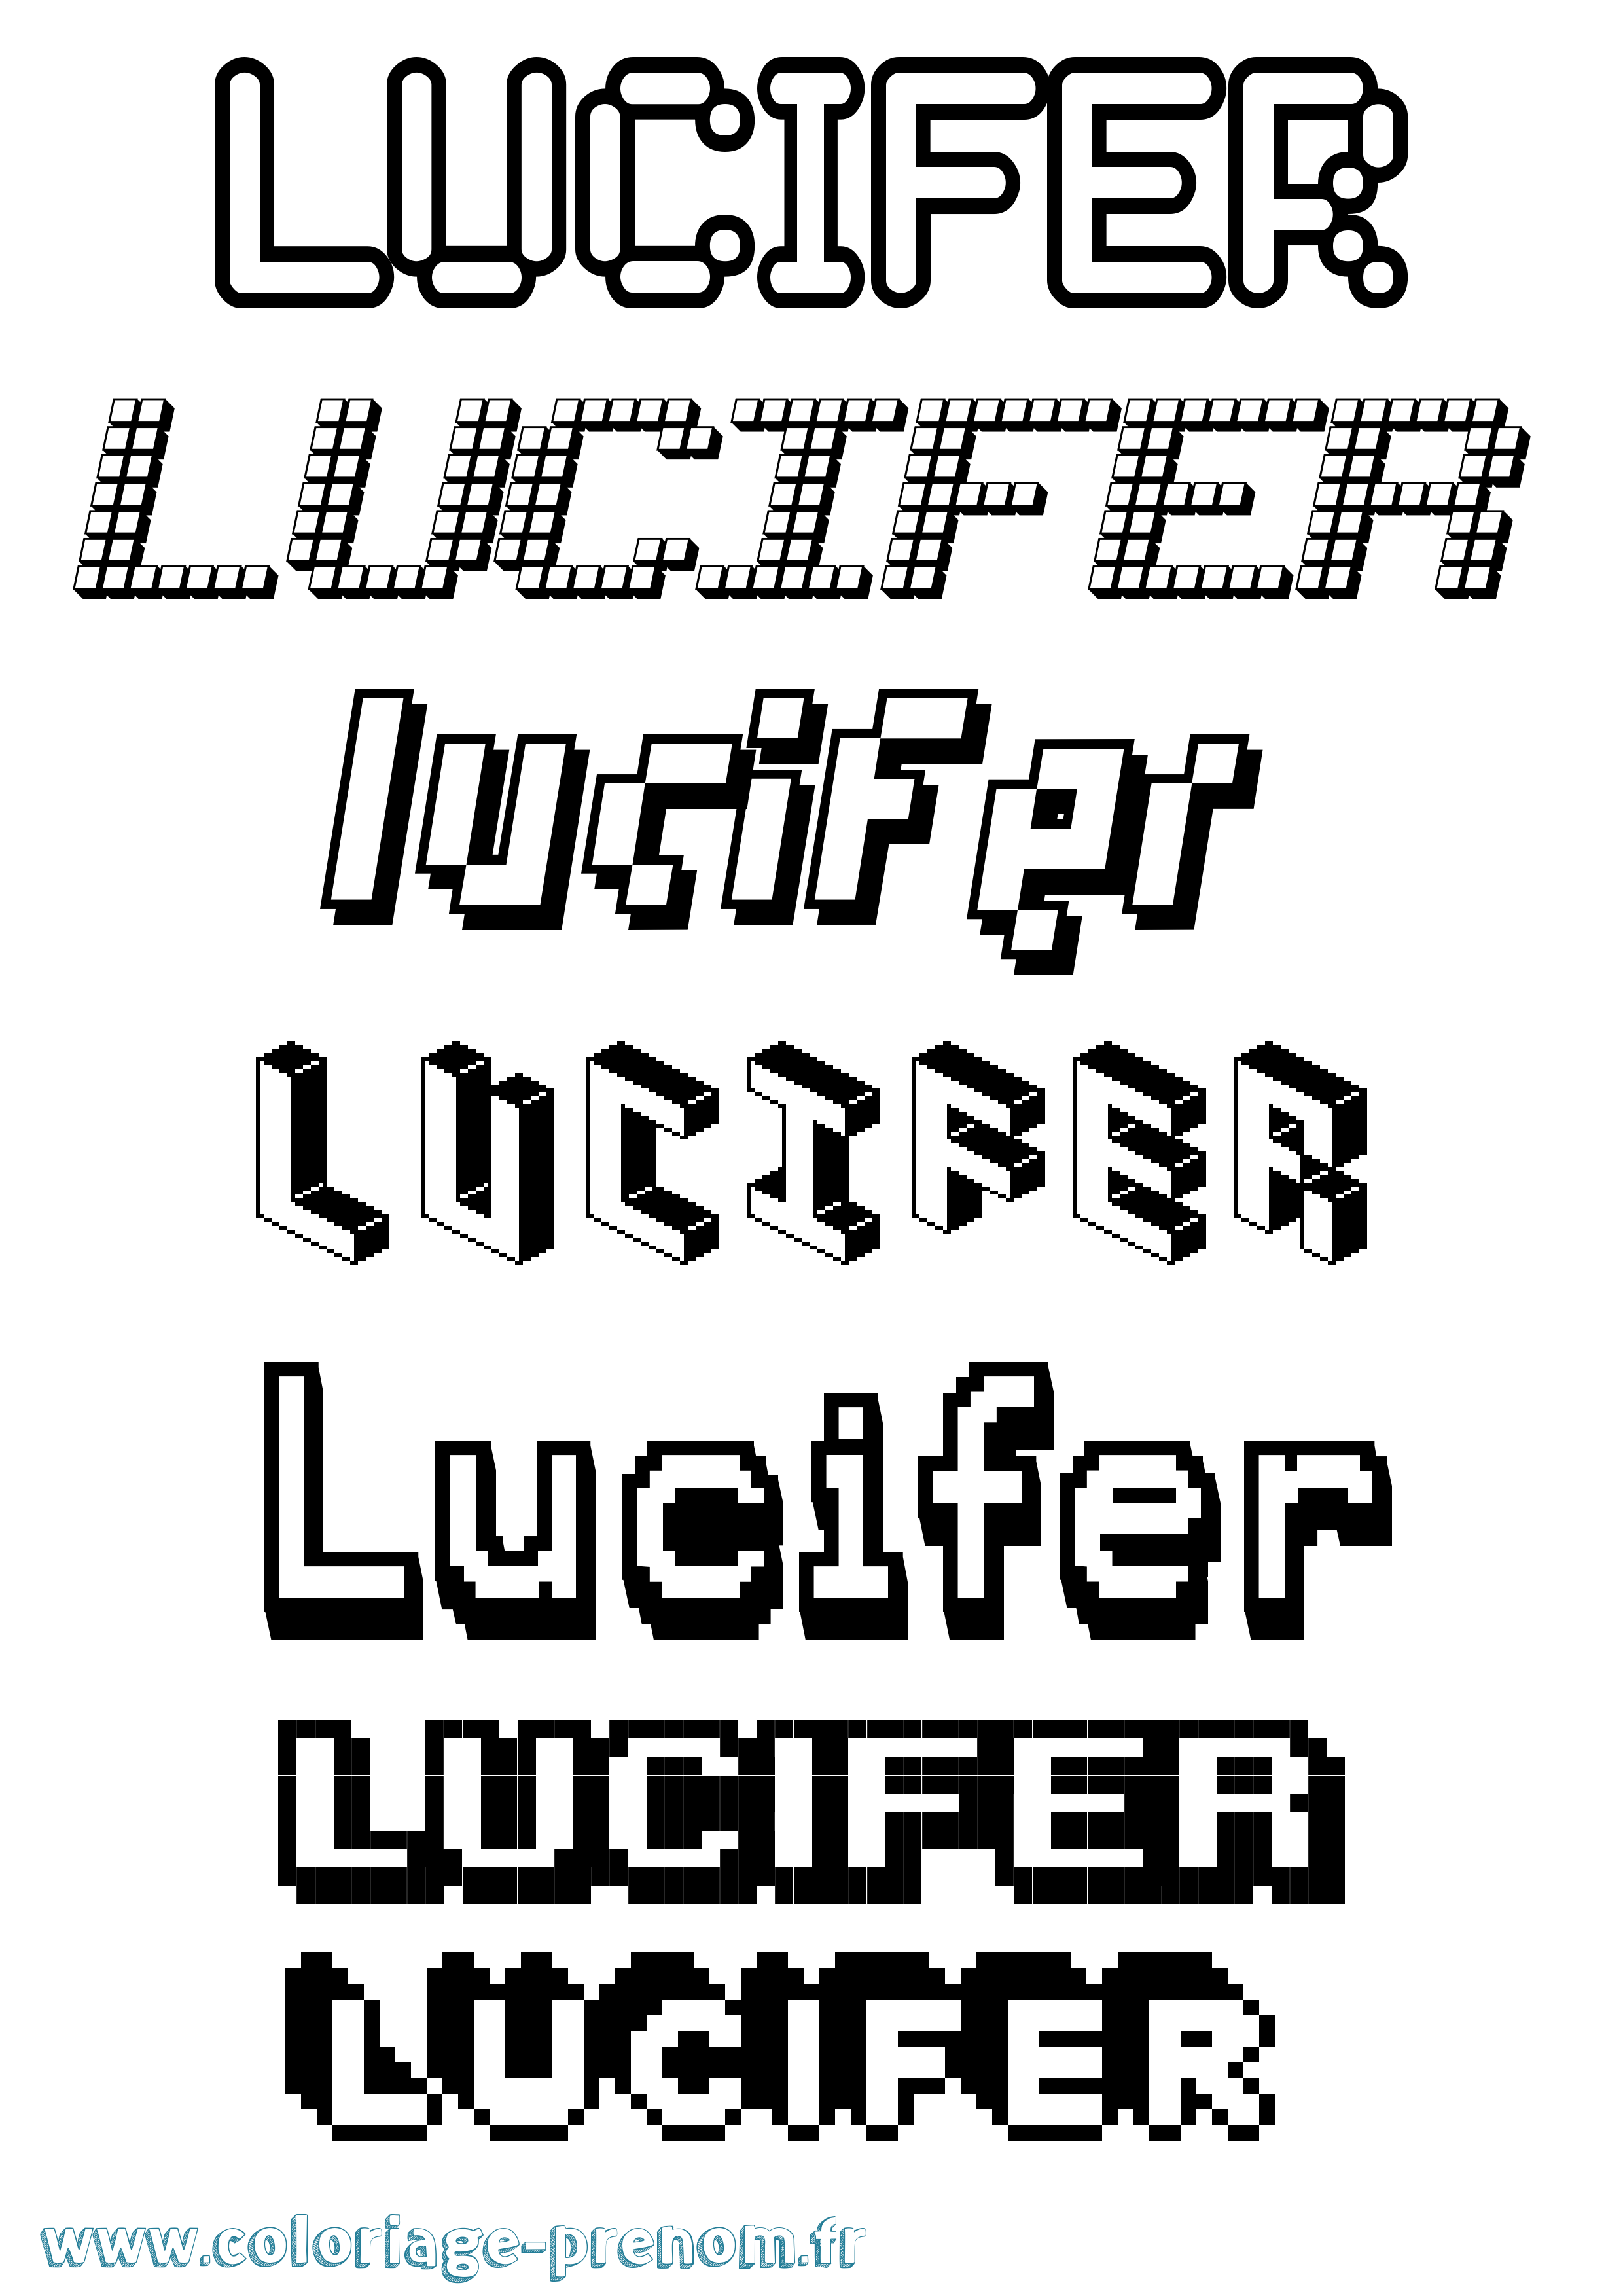 Coloriage prénom Lucifer Pixel